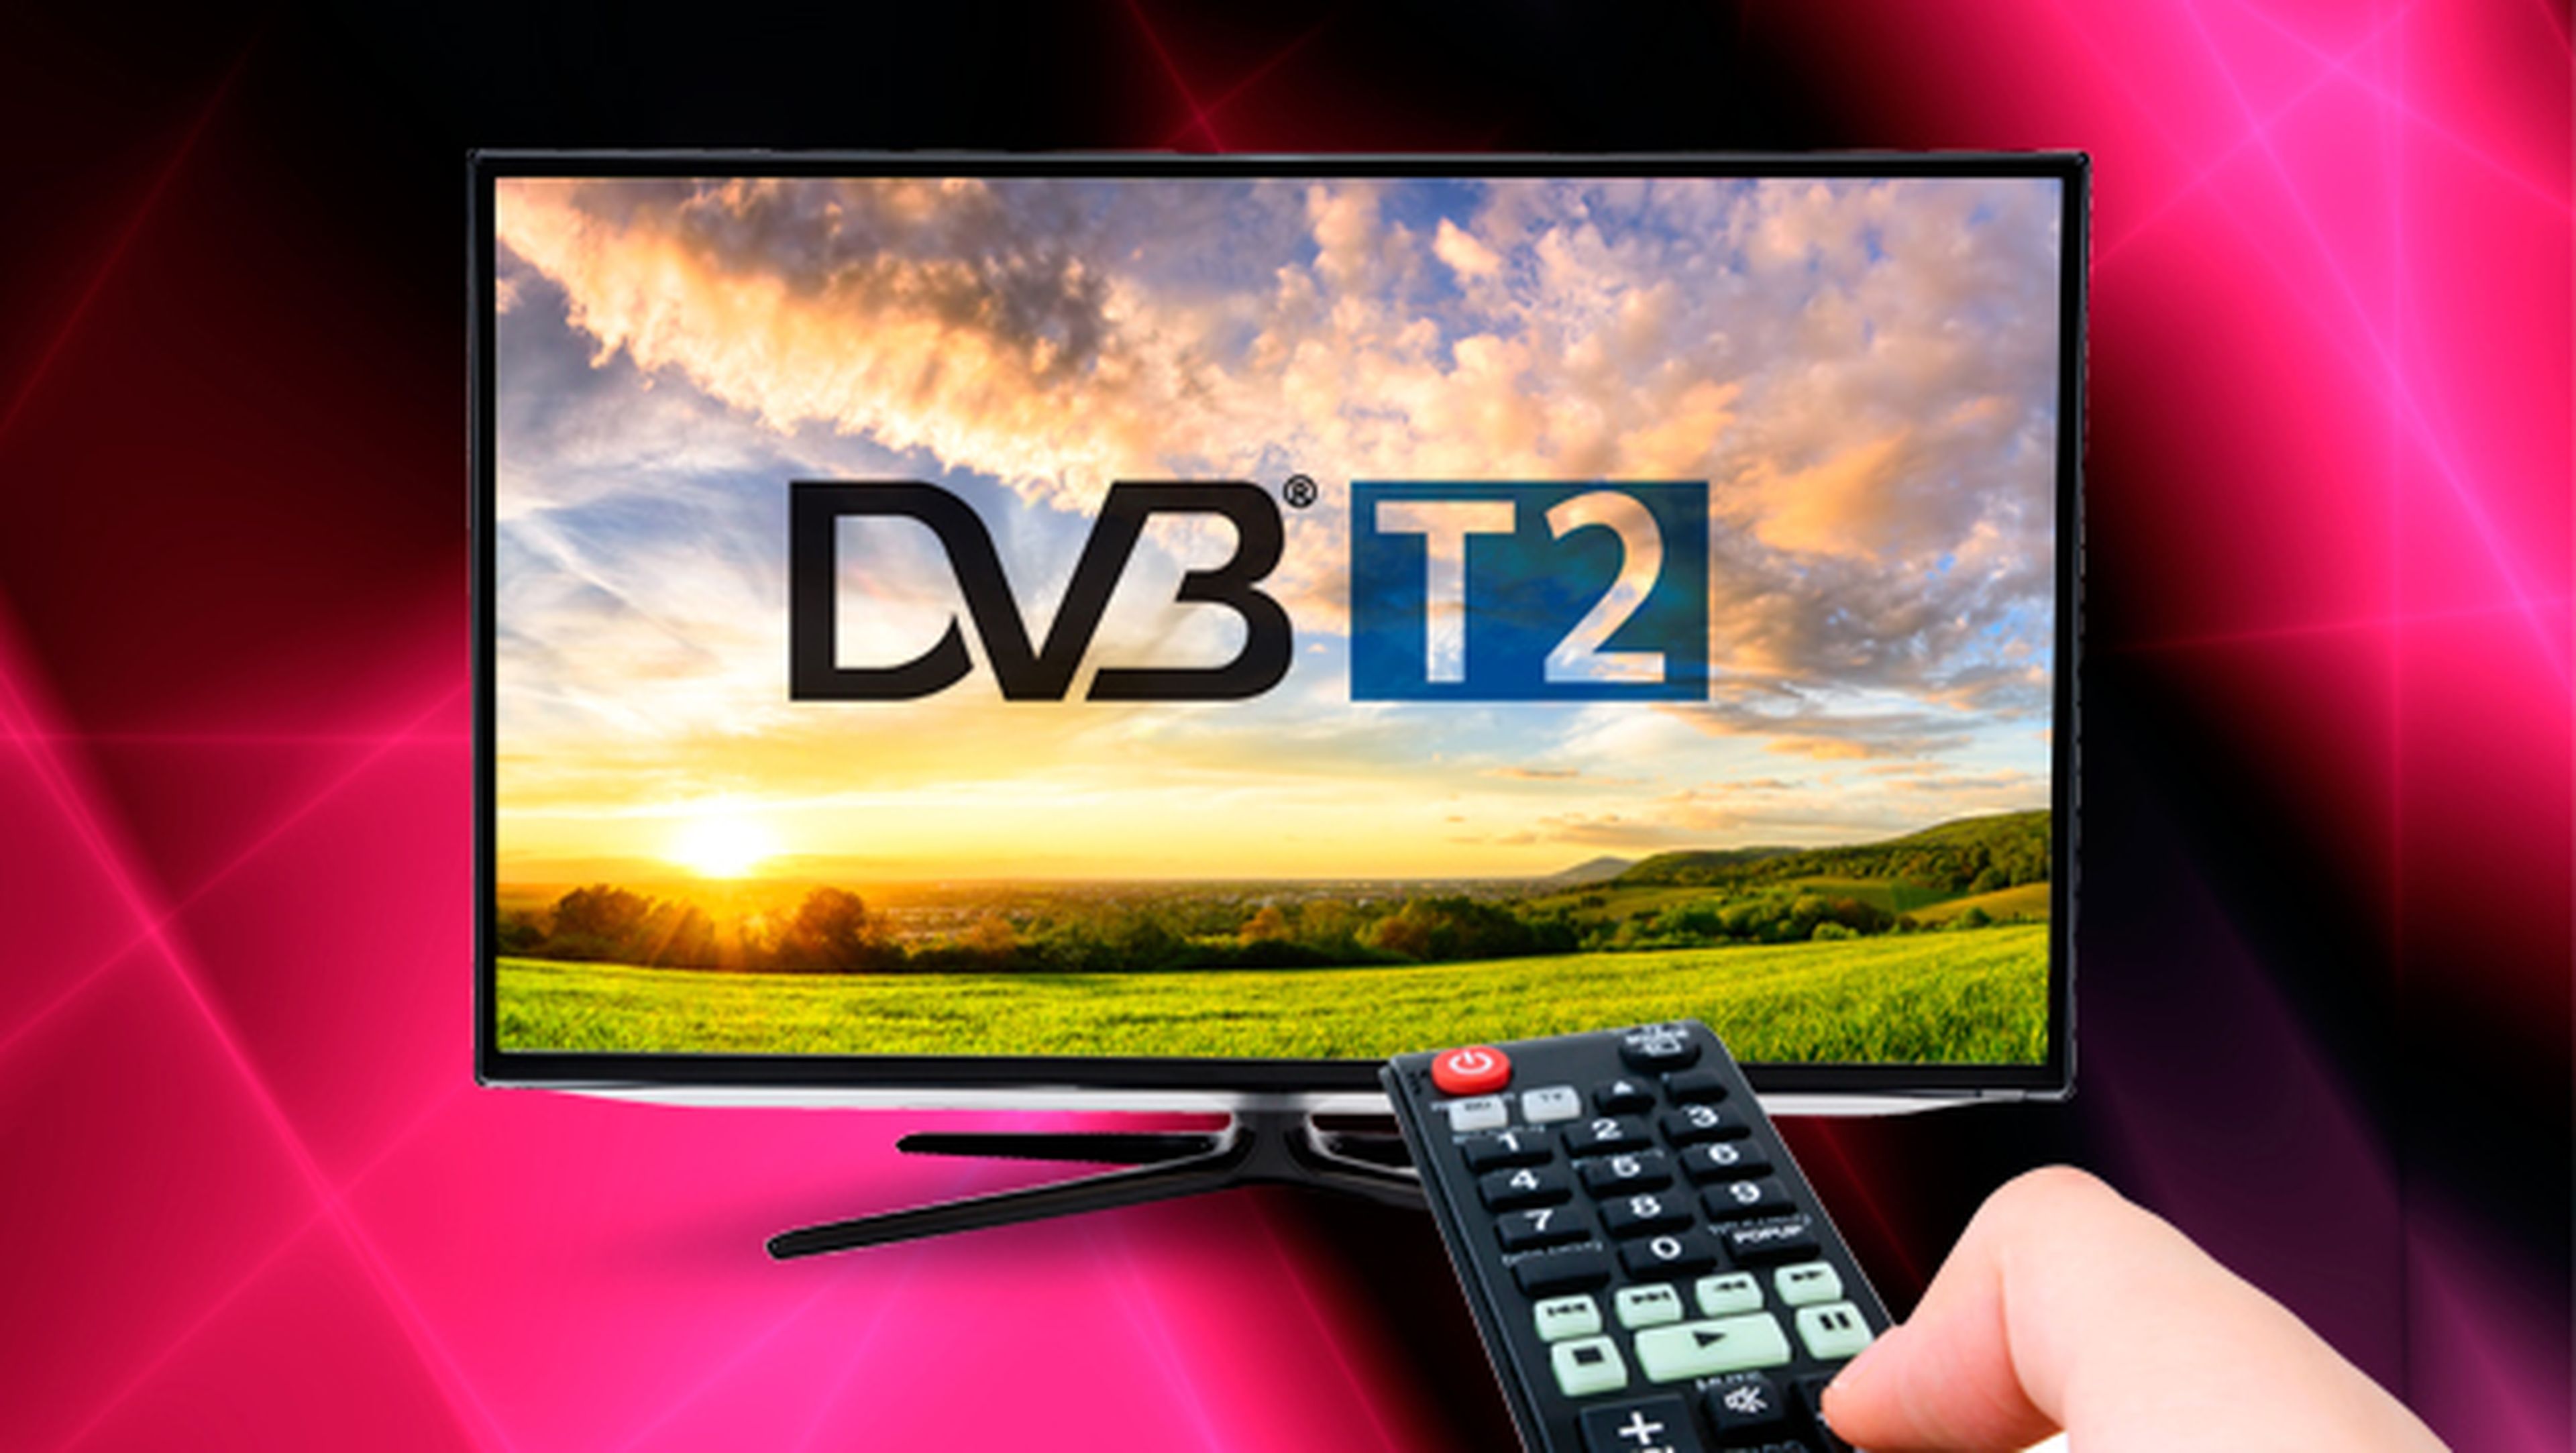 Qué es TDT 2 o DVB-T2?